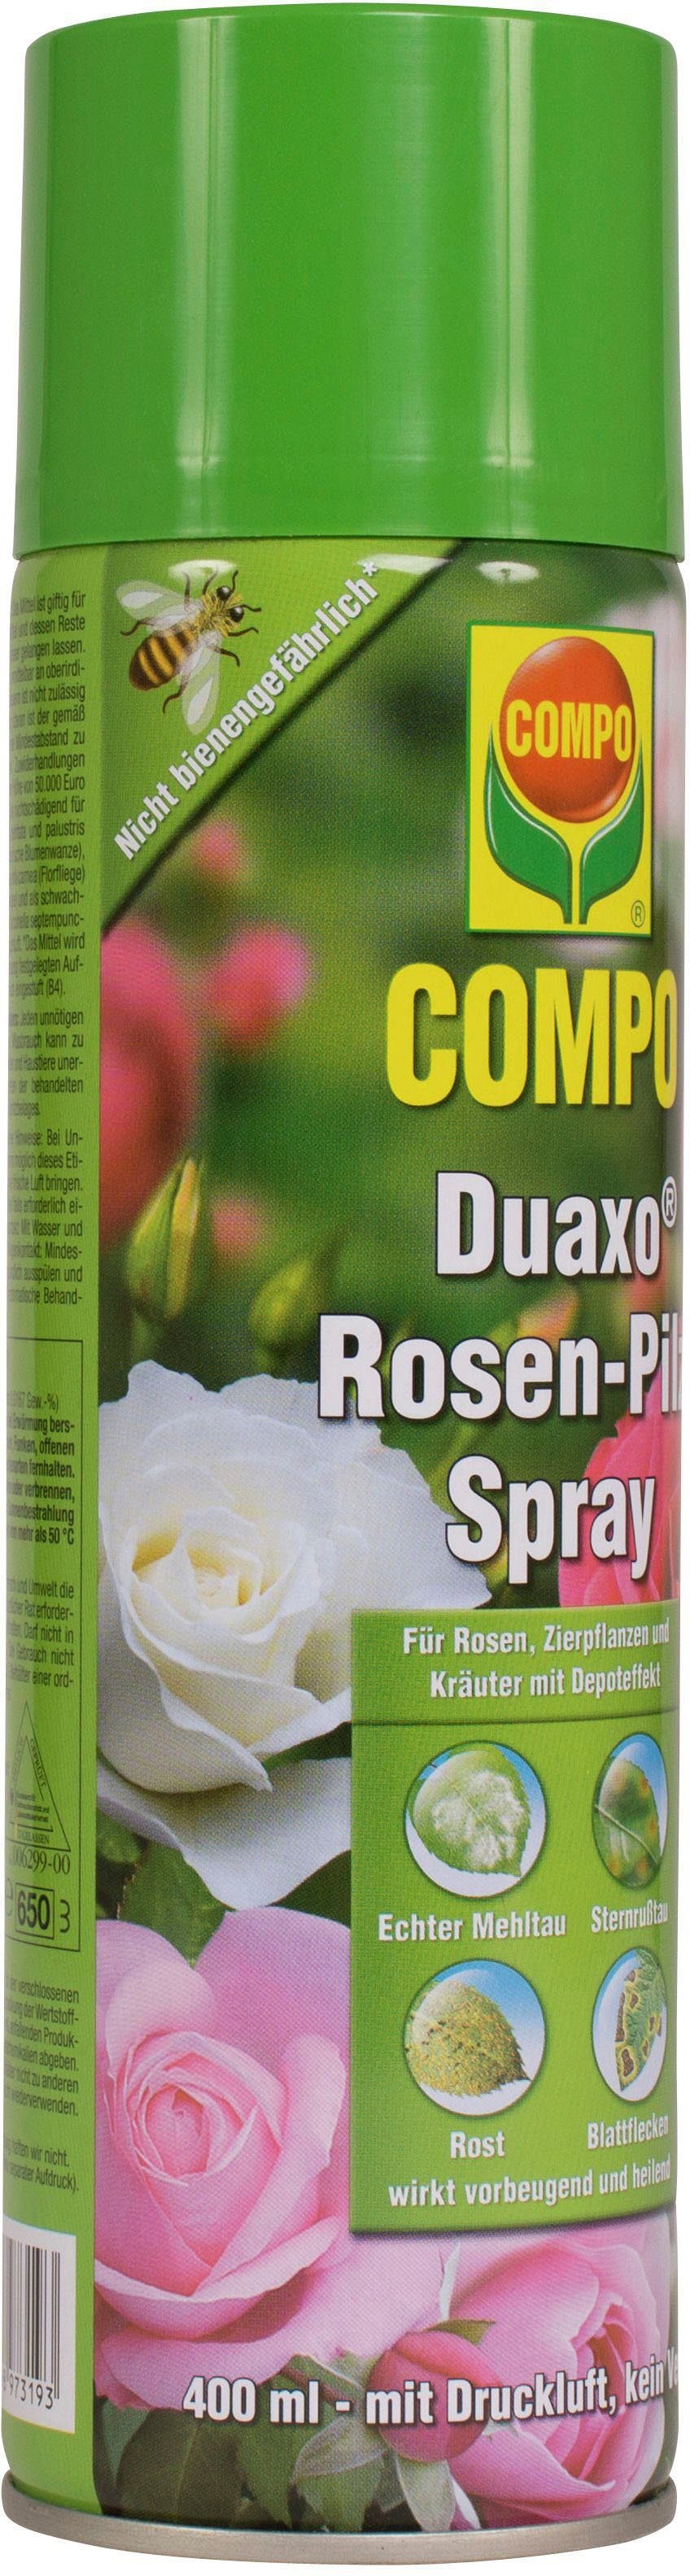 Compo Pflanzen-Pilzfrei »Duaxo Rosen-Pilz Spray«, 400 ml online kaufen |  OTTO